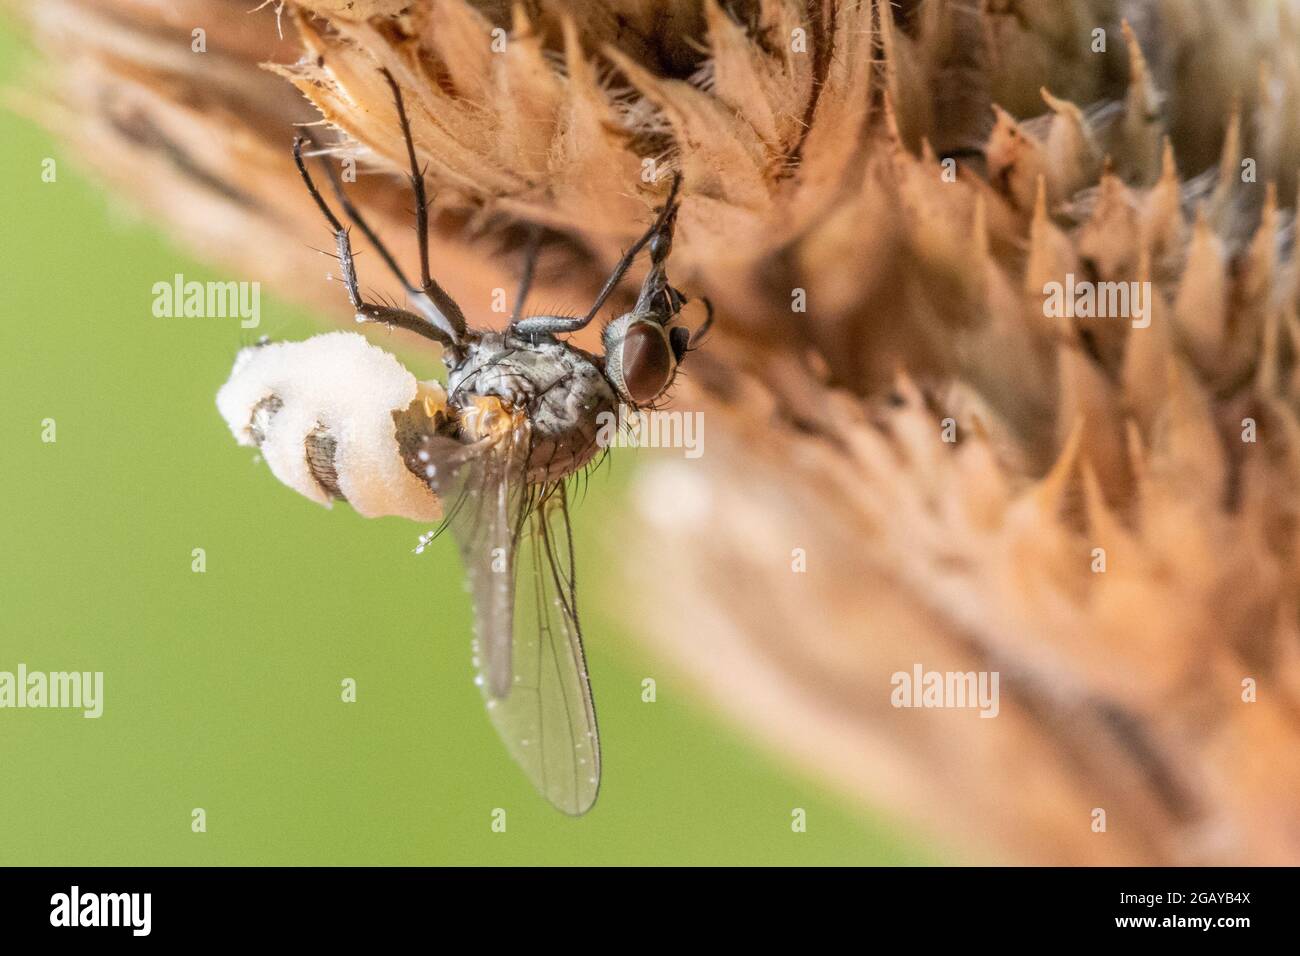 Faune du Royaume-Uni : la mouche est attaquée par le champignon Entomophthora, horrible et parasite, qui l'a mummifié et contrôle maintenant le cerveau de la mouche Banque D'Images